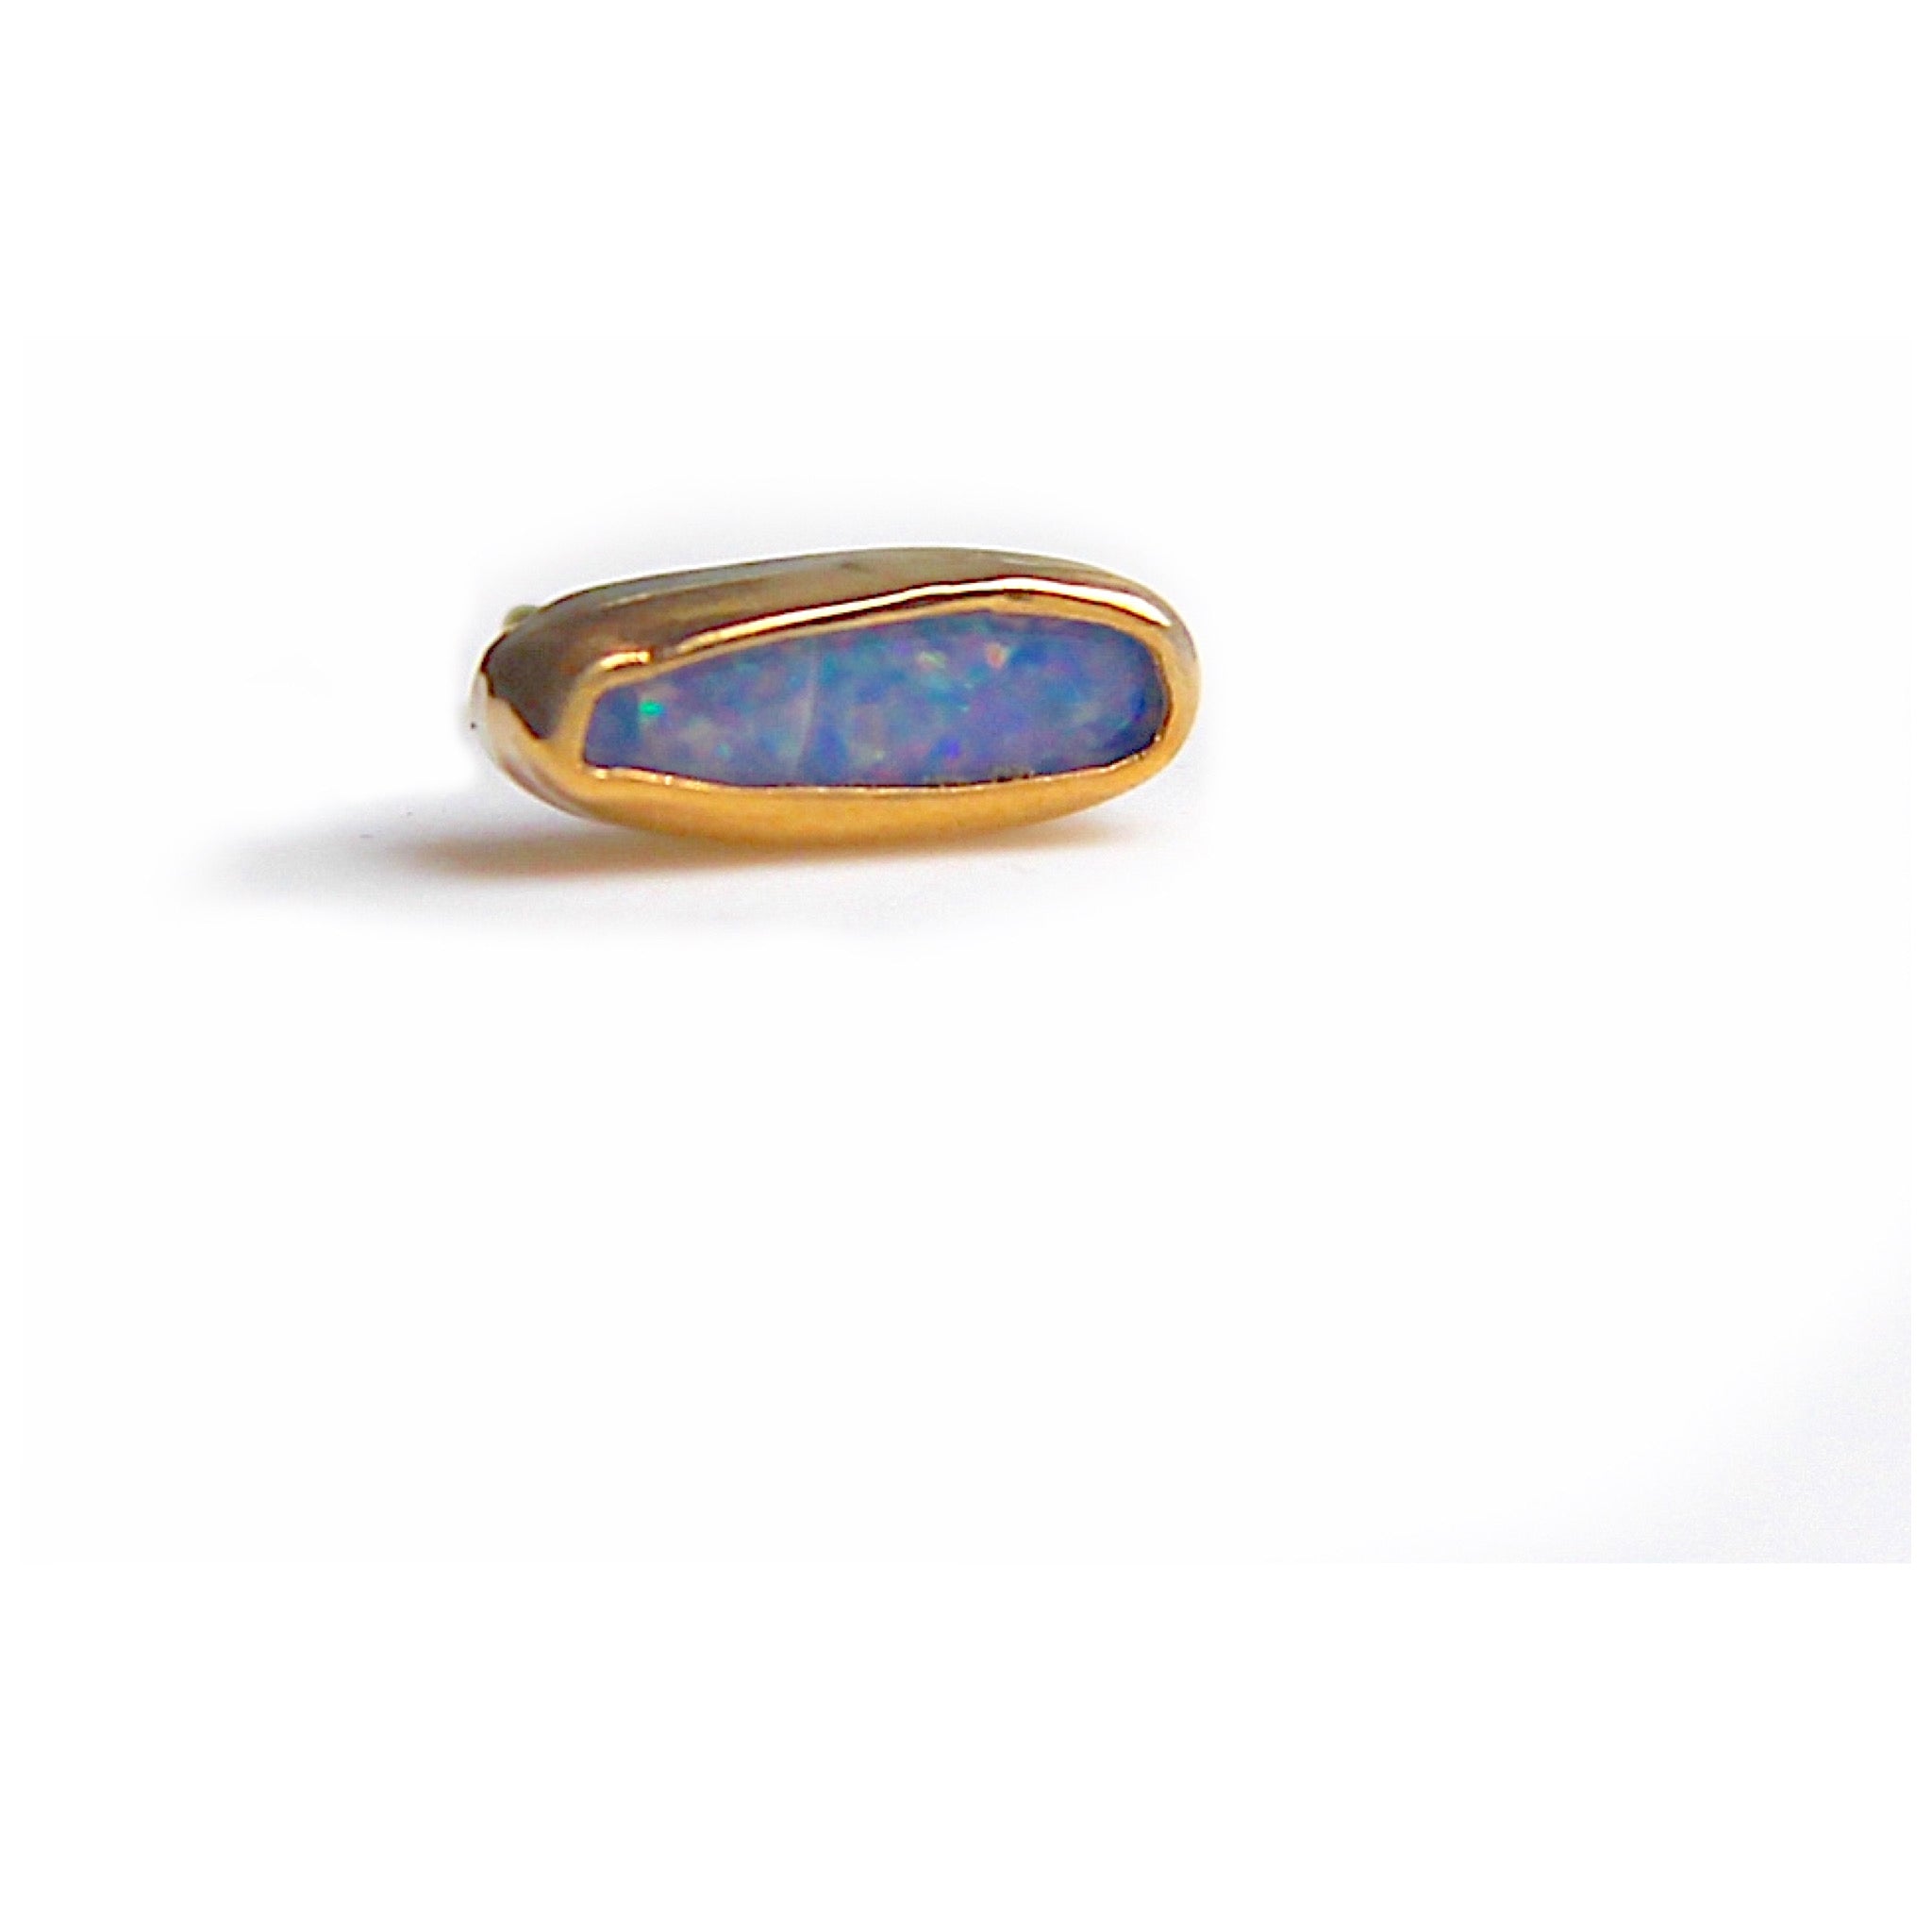 Geometric opal stud earrings